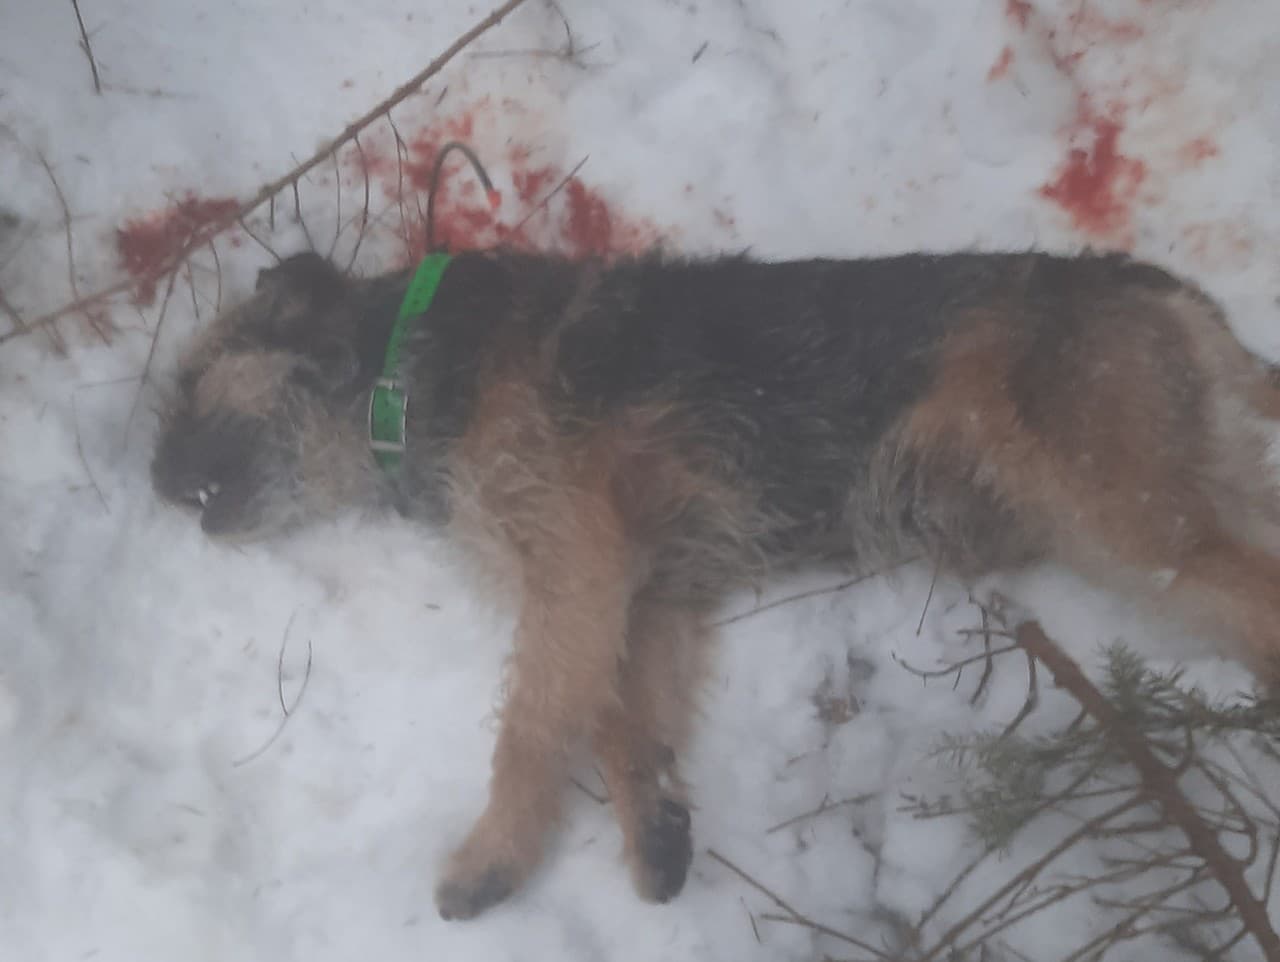 Vlk usmrtil psa neďaleko od majiteľa